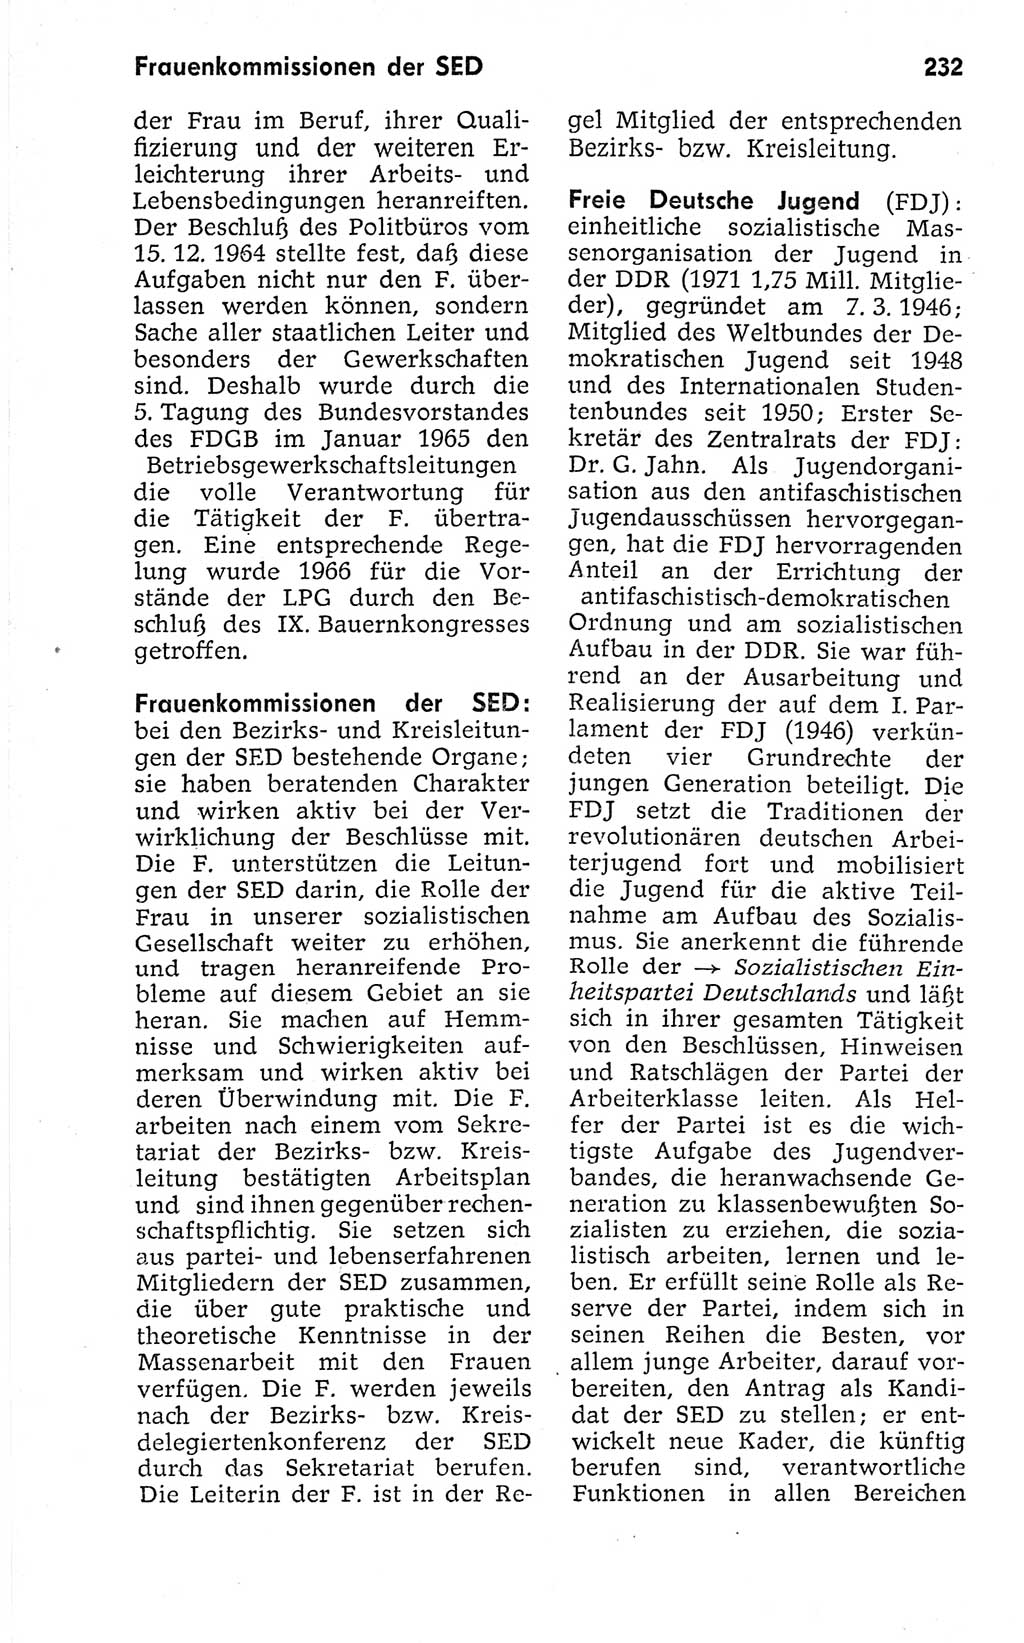 Kleines politisches Wörterbuch [Deutsche Demokratische Republik (DDR)] 1973, Seite 232 (Kl. pol. Wb. DDR 1973, S. 232)